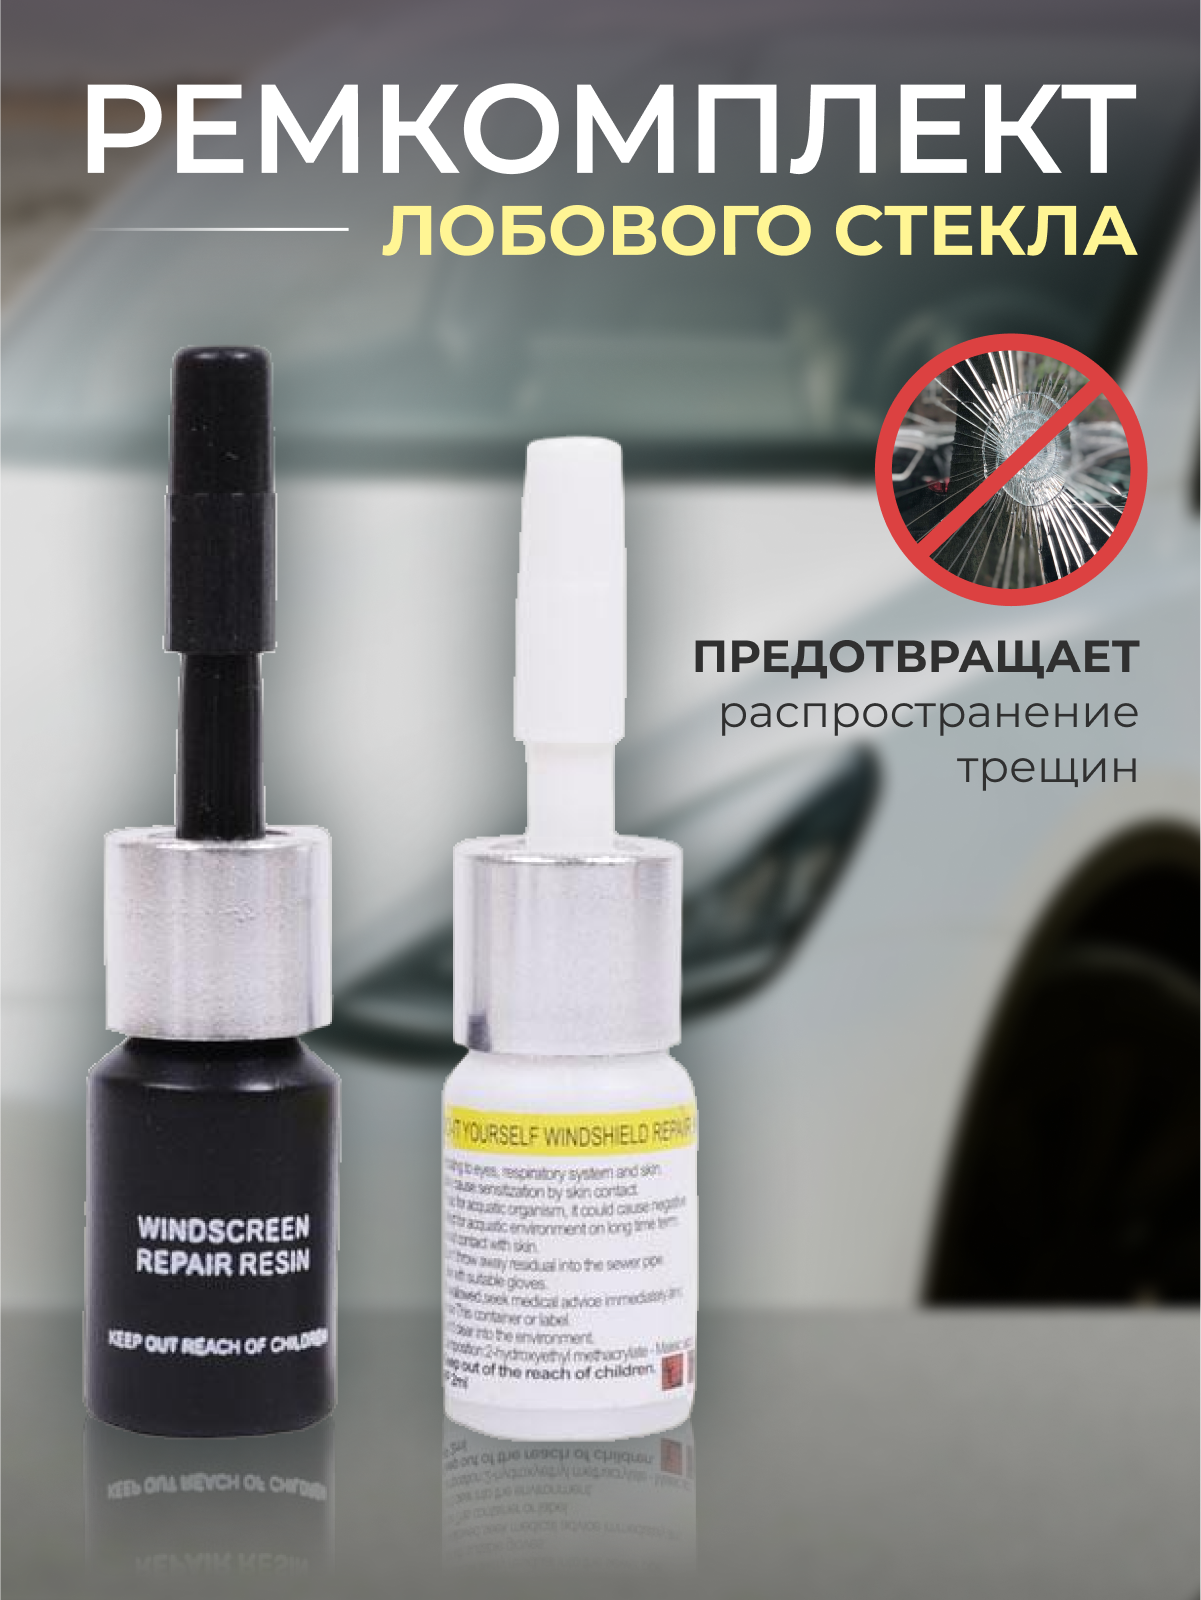 Ремкомплект для ремонта лобового стекла автомобиля - купить в Москве, цены на Мегамаркет